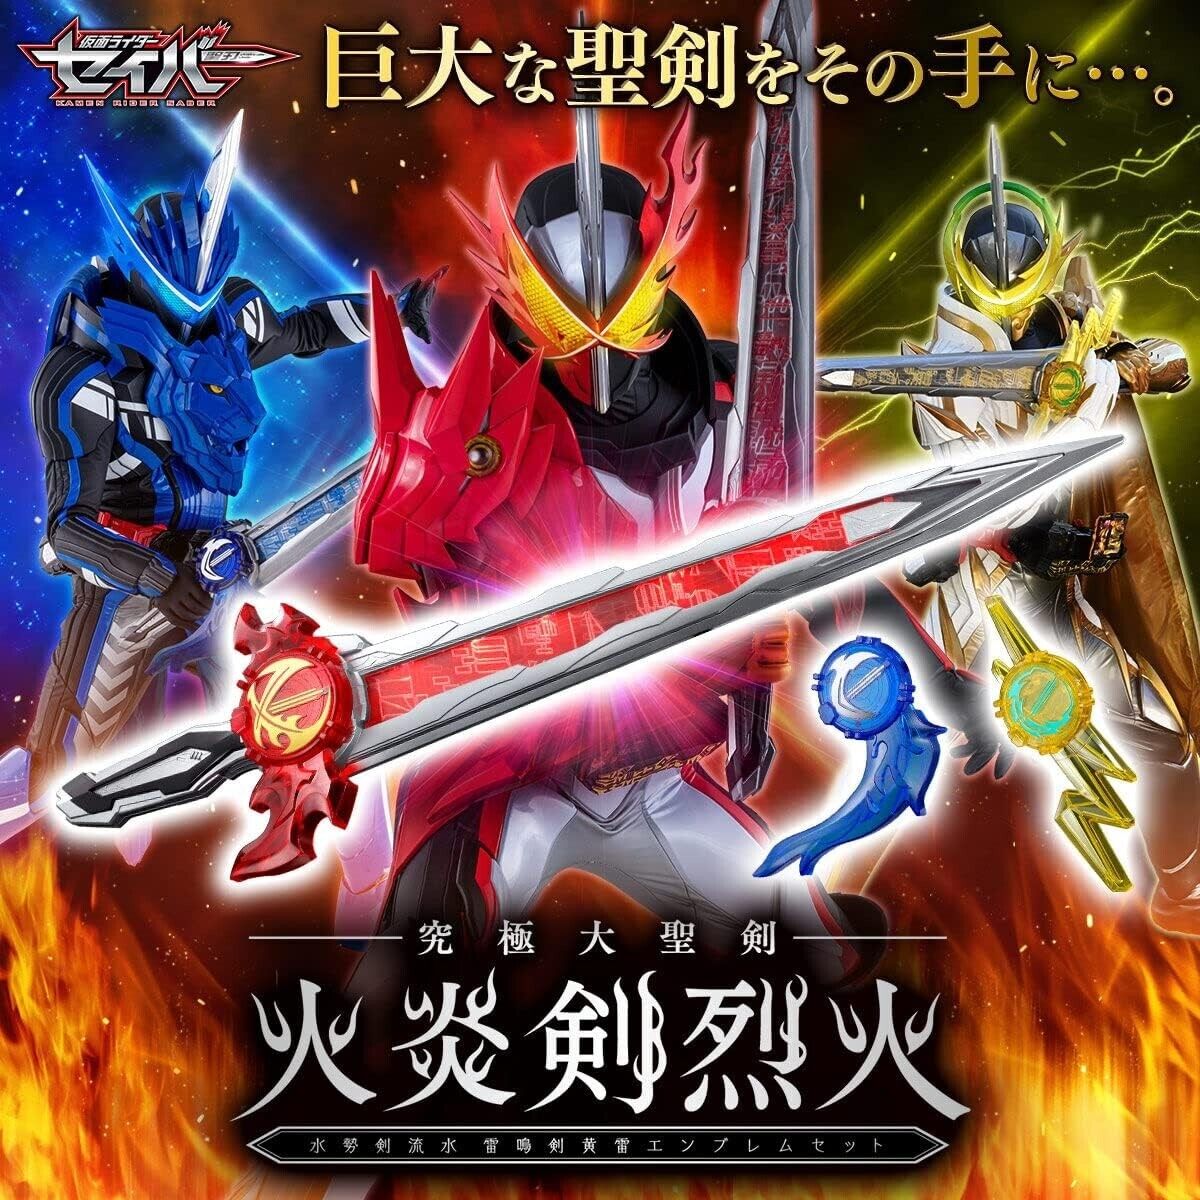 Kamen/Masked Rider Saber Ultimate Great Sword Emblem Set figure toy BANDAI Anime